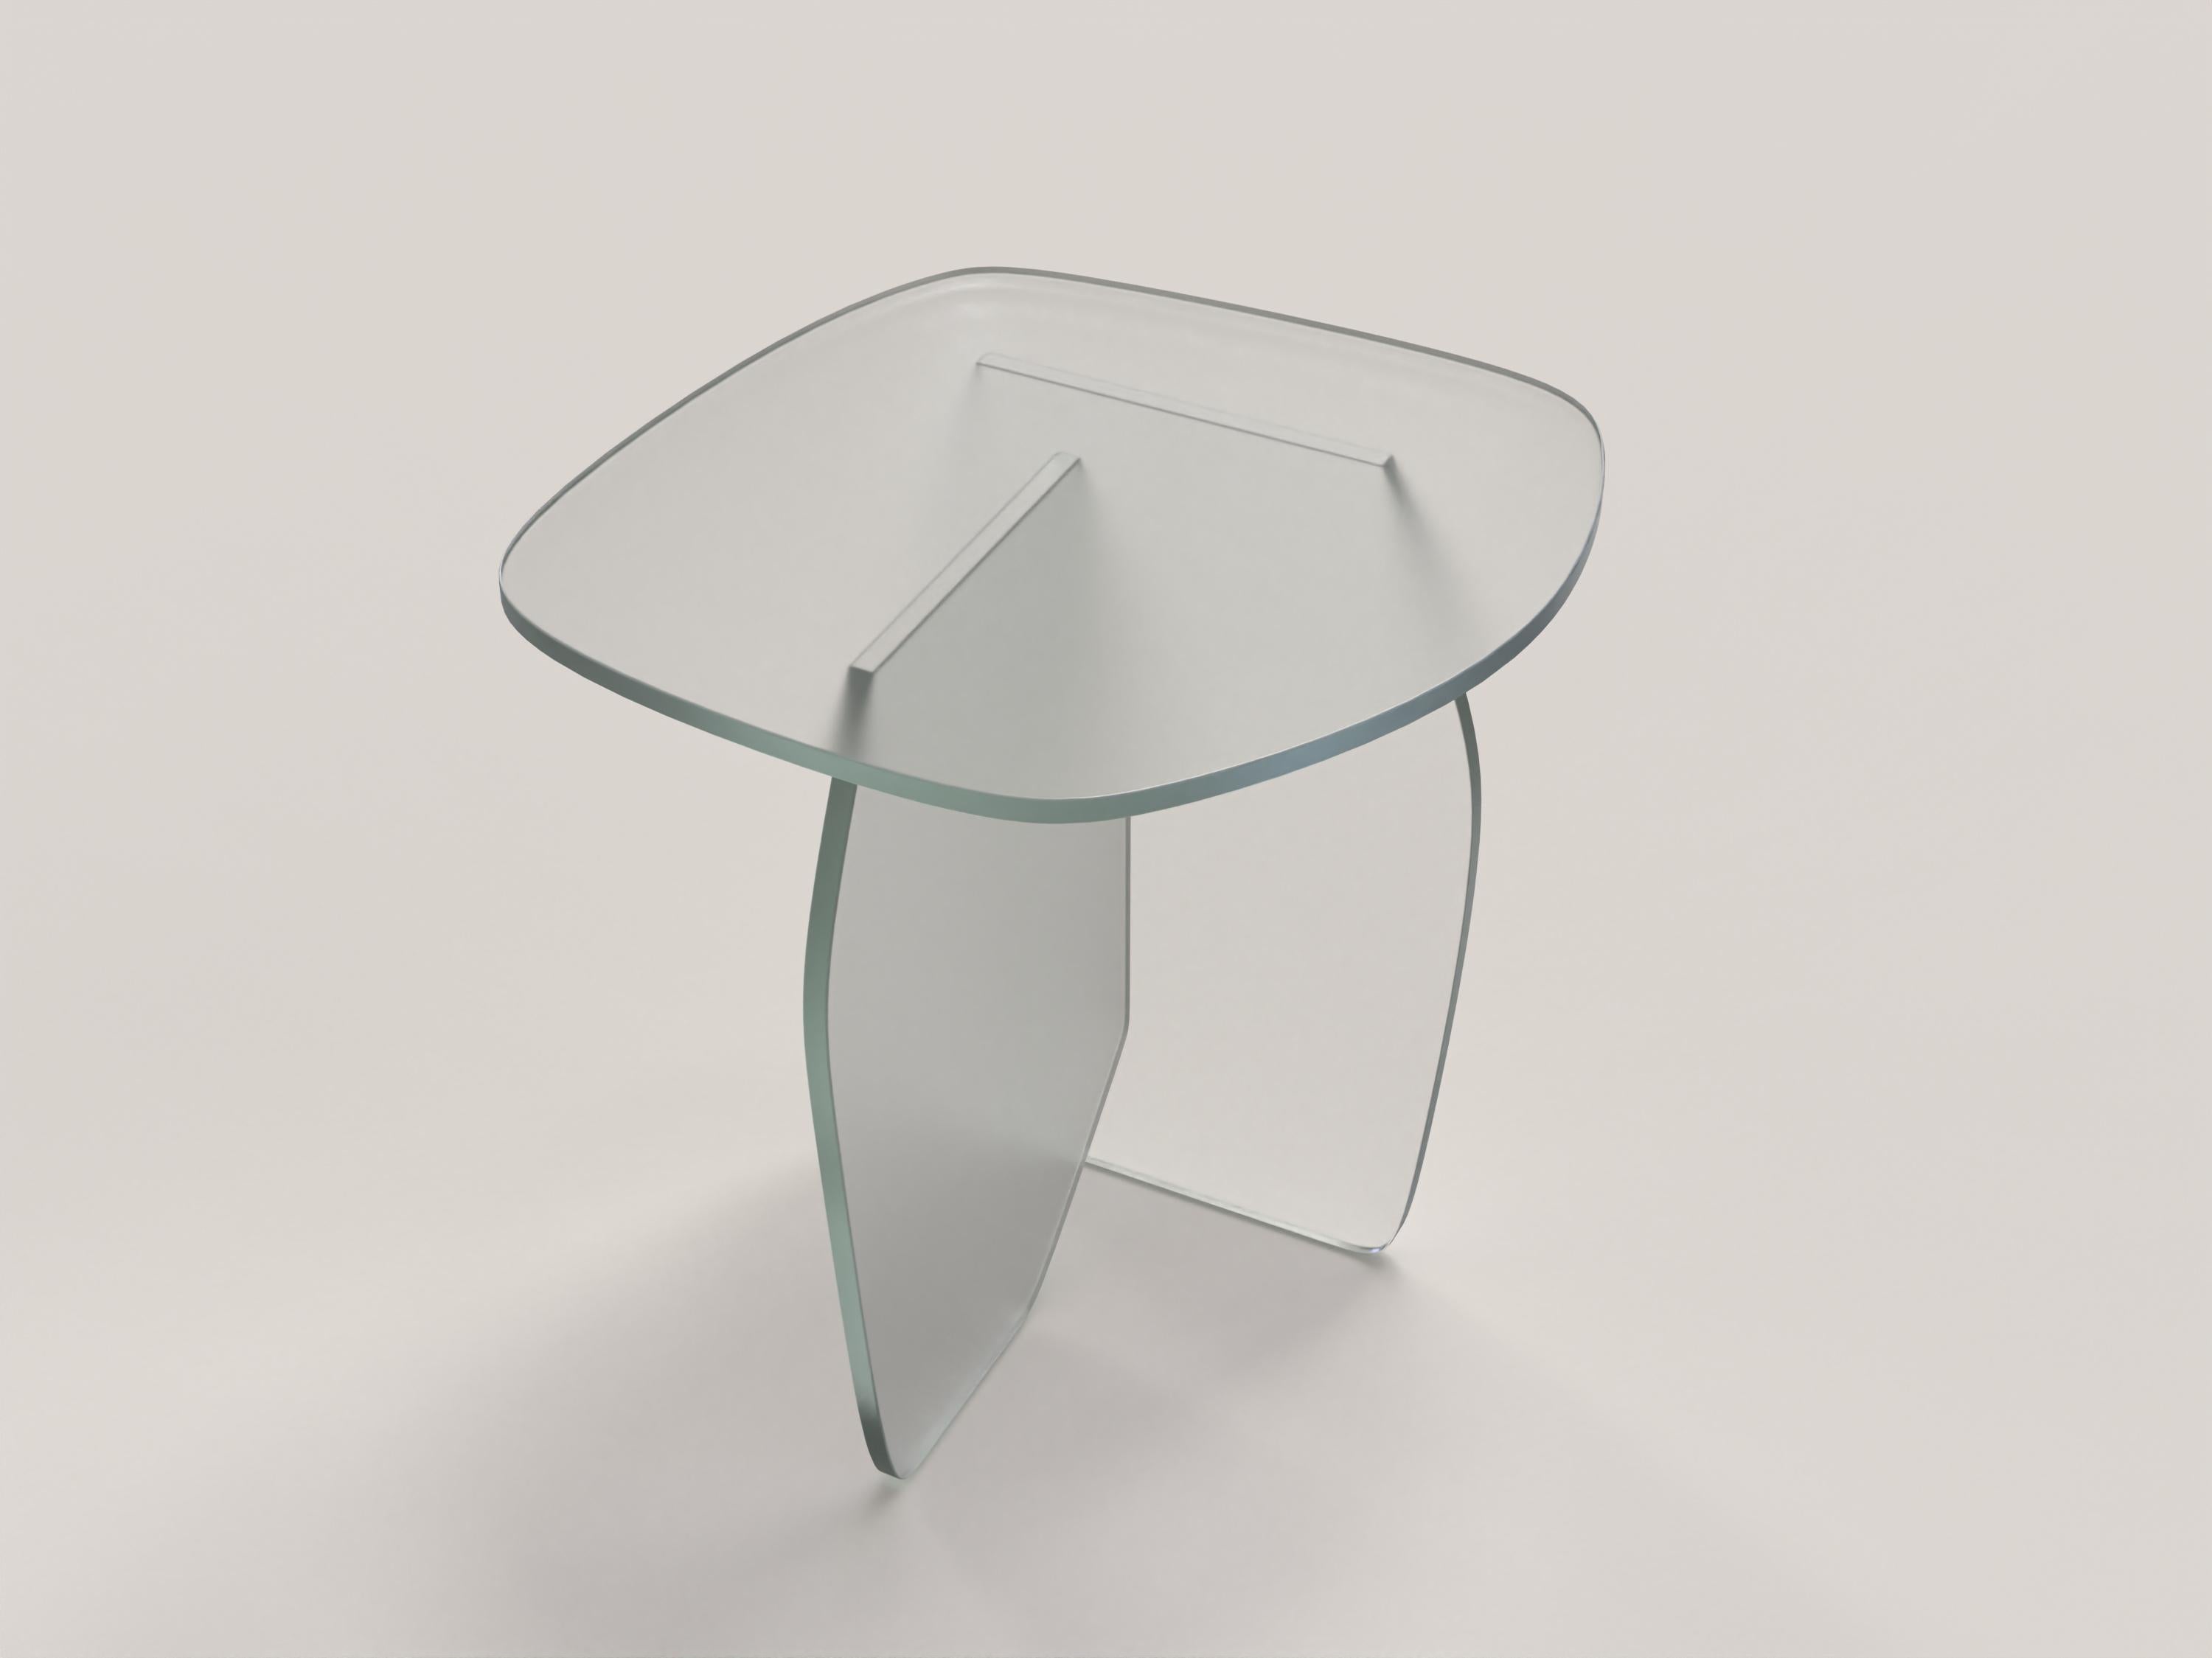 Panorama V1 est une table d'appoint du 21e siècle fabriquée par des artisans italiens en verre clair sablé. La pièce est fabriquée en une édition limitée de 1000 exemplaires signés et progressivement numérotés. Il fait partie du langage de